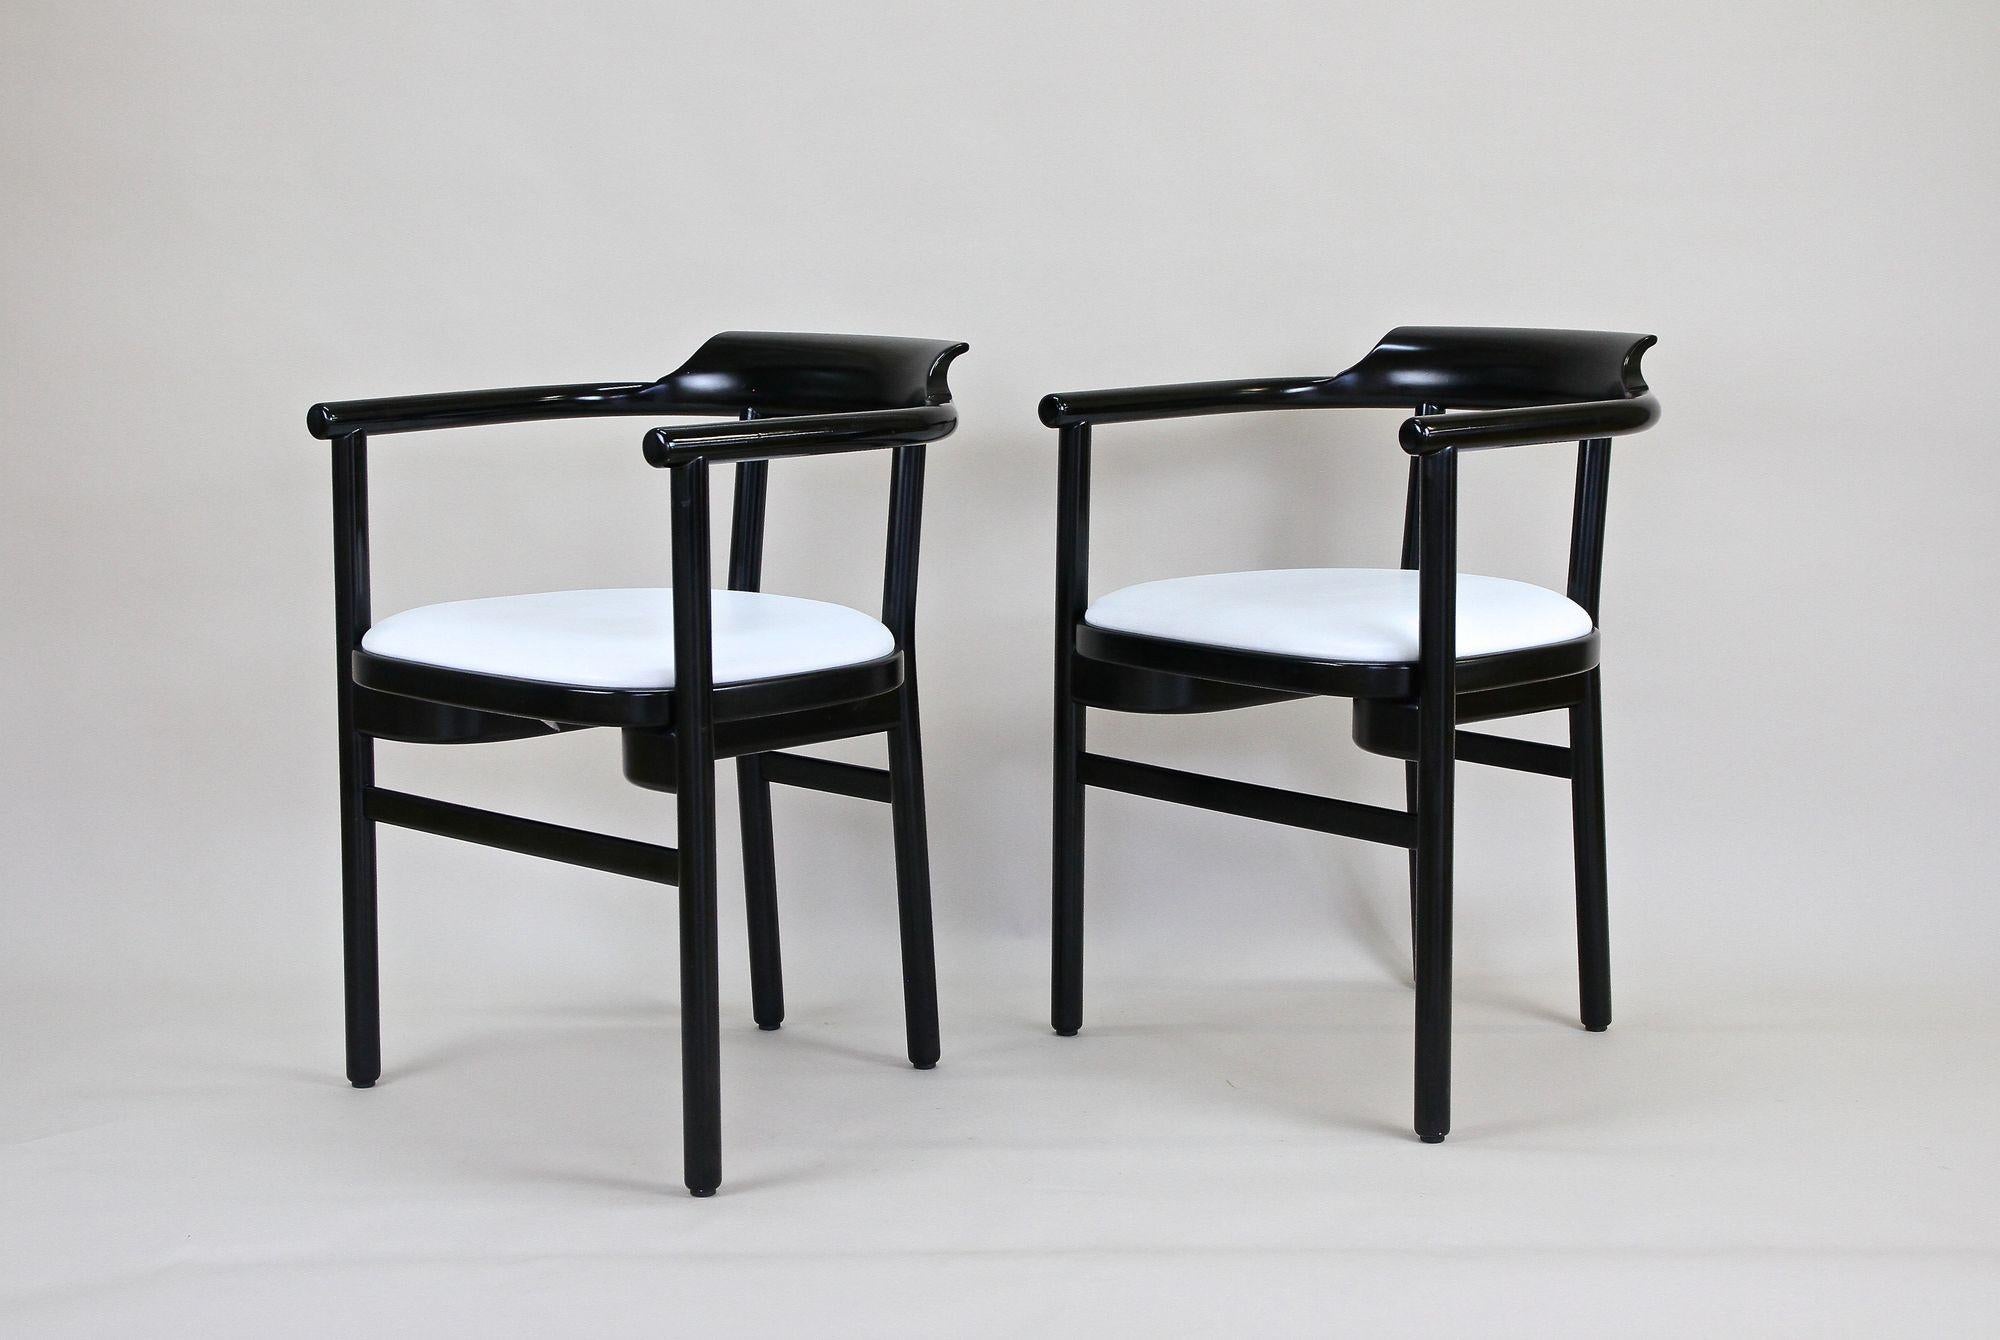 Unglaublich aussehendes Paar schwarz lackierter Sessel von der renommierten Firma Thonet Wien um 1980. Diese zeitlos gestalteten schwarzen Sessel aus dem späten 20. Jahrhundert bestechen durch elegante Linienführung und wurden aus edlem Buchenholz